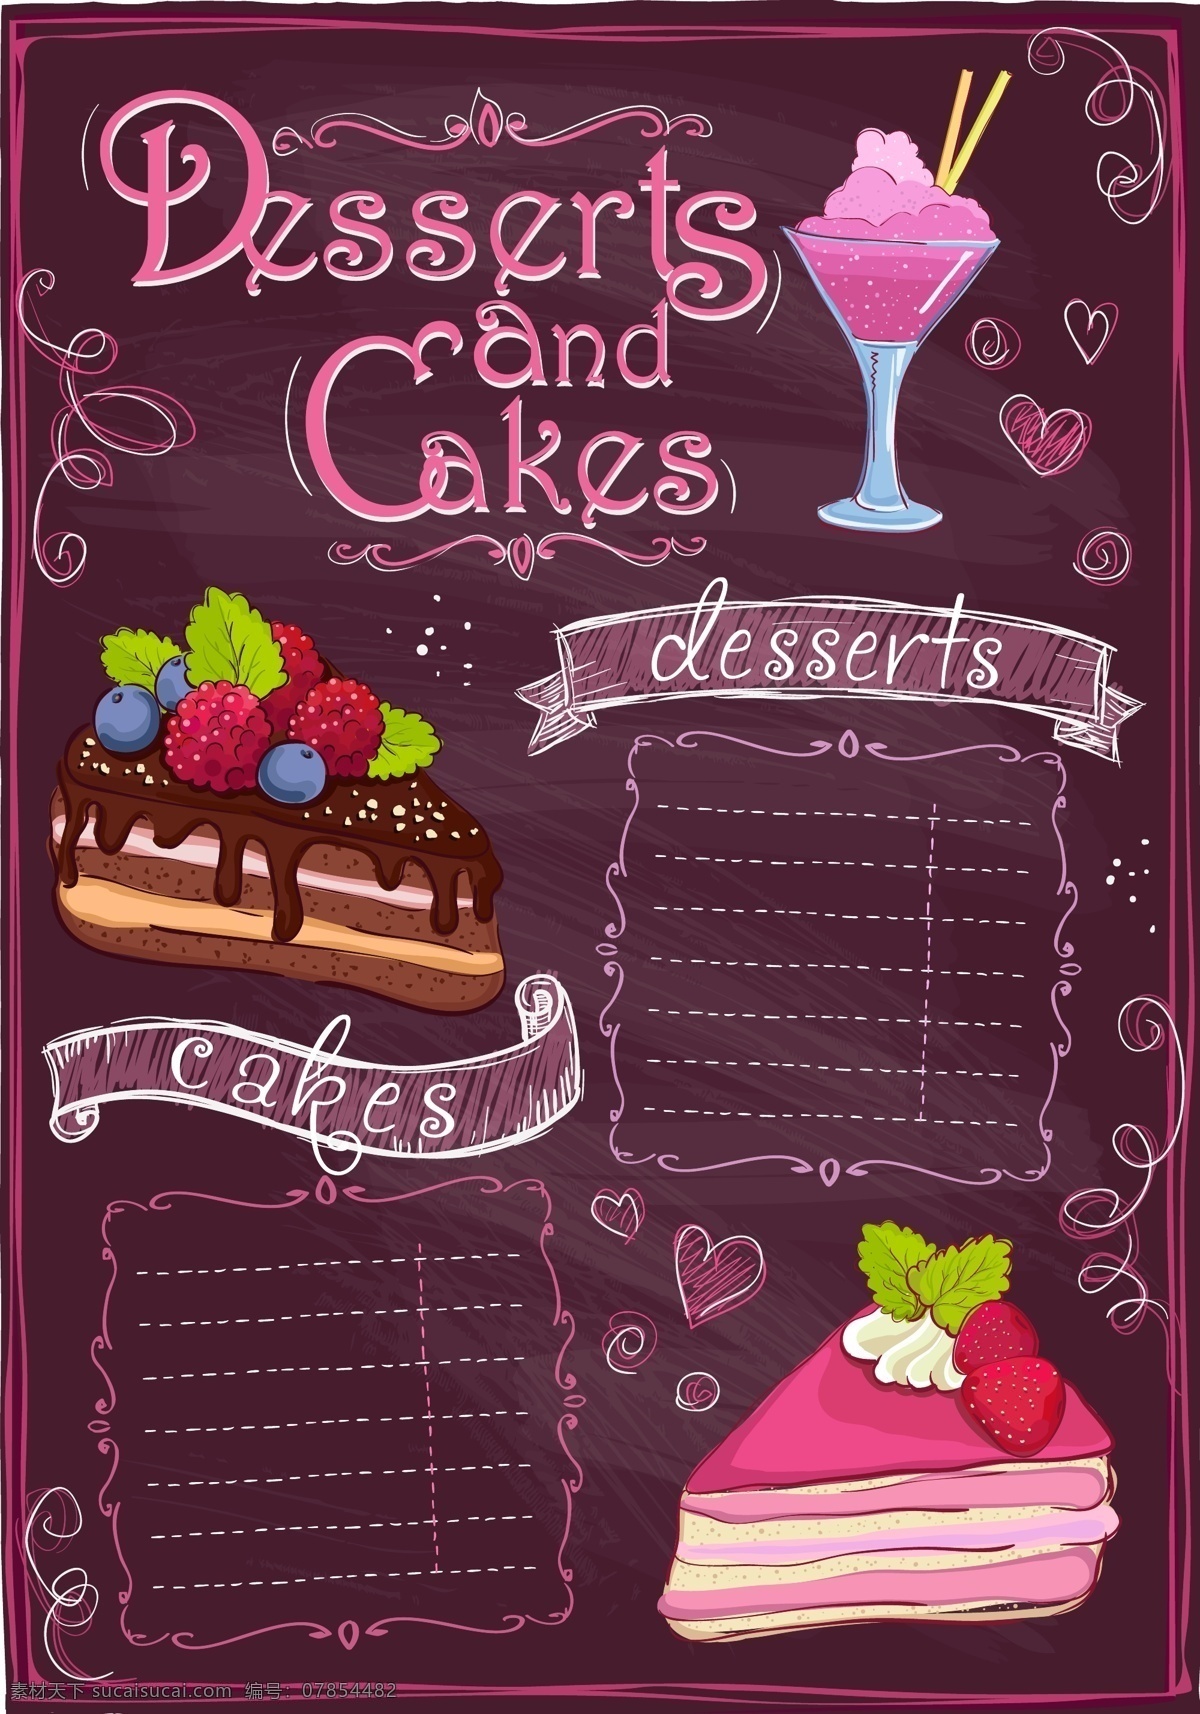 粉色 蛋糕 饮料 菜单 海报 背景 模板 餐饮 美食 西餐 甜点 矢量